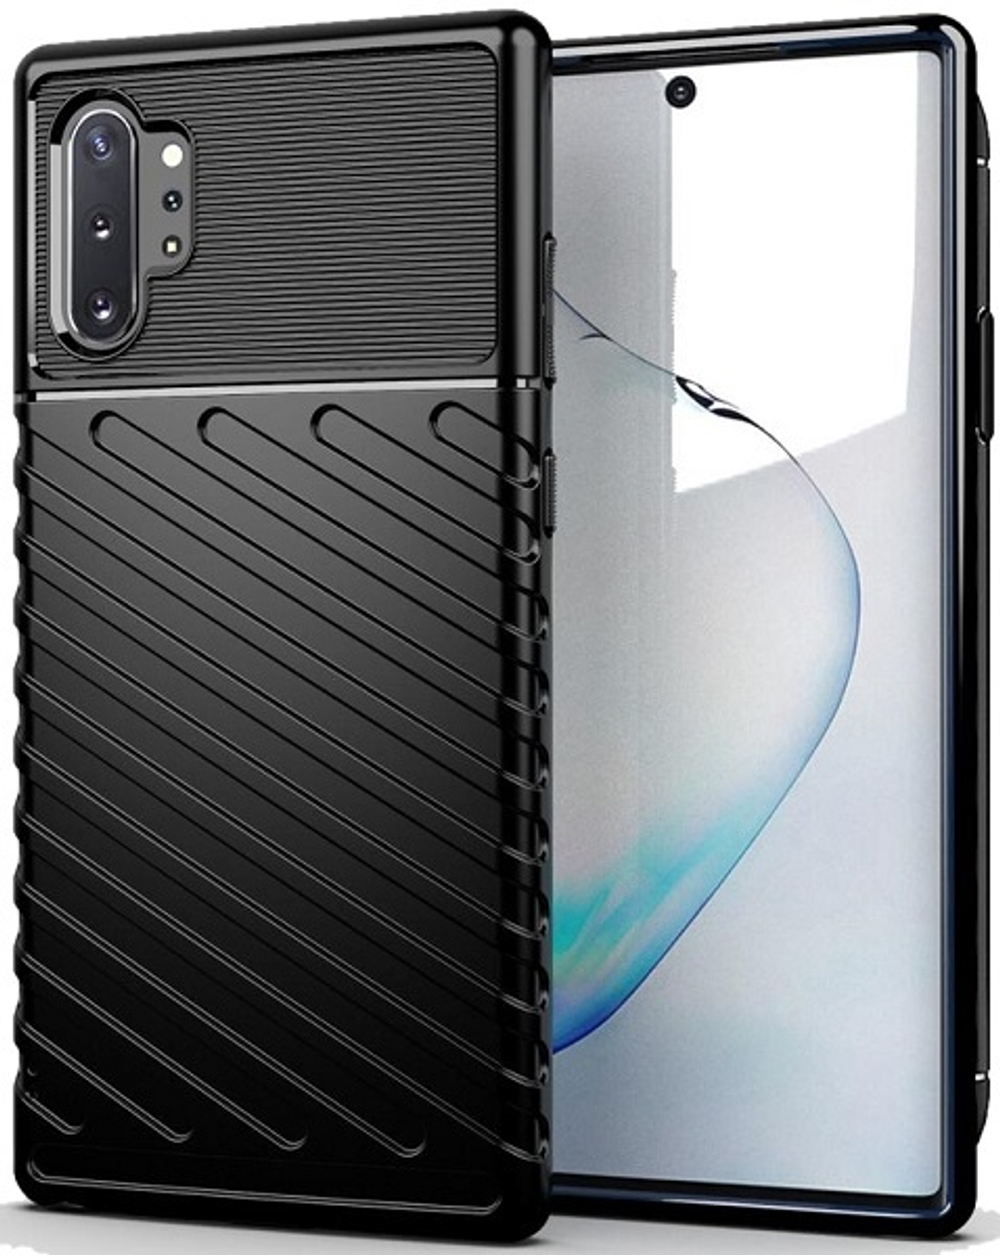 Чехол для Samsung Galaxy Note 10+ цвет Black (черный), серия Onyx от Caseport